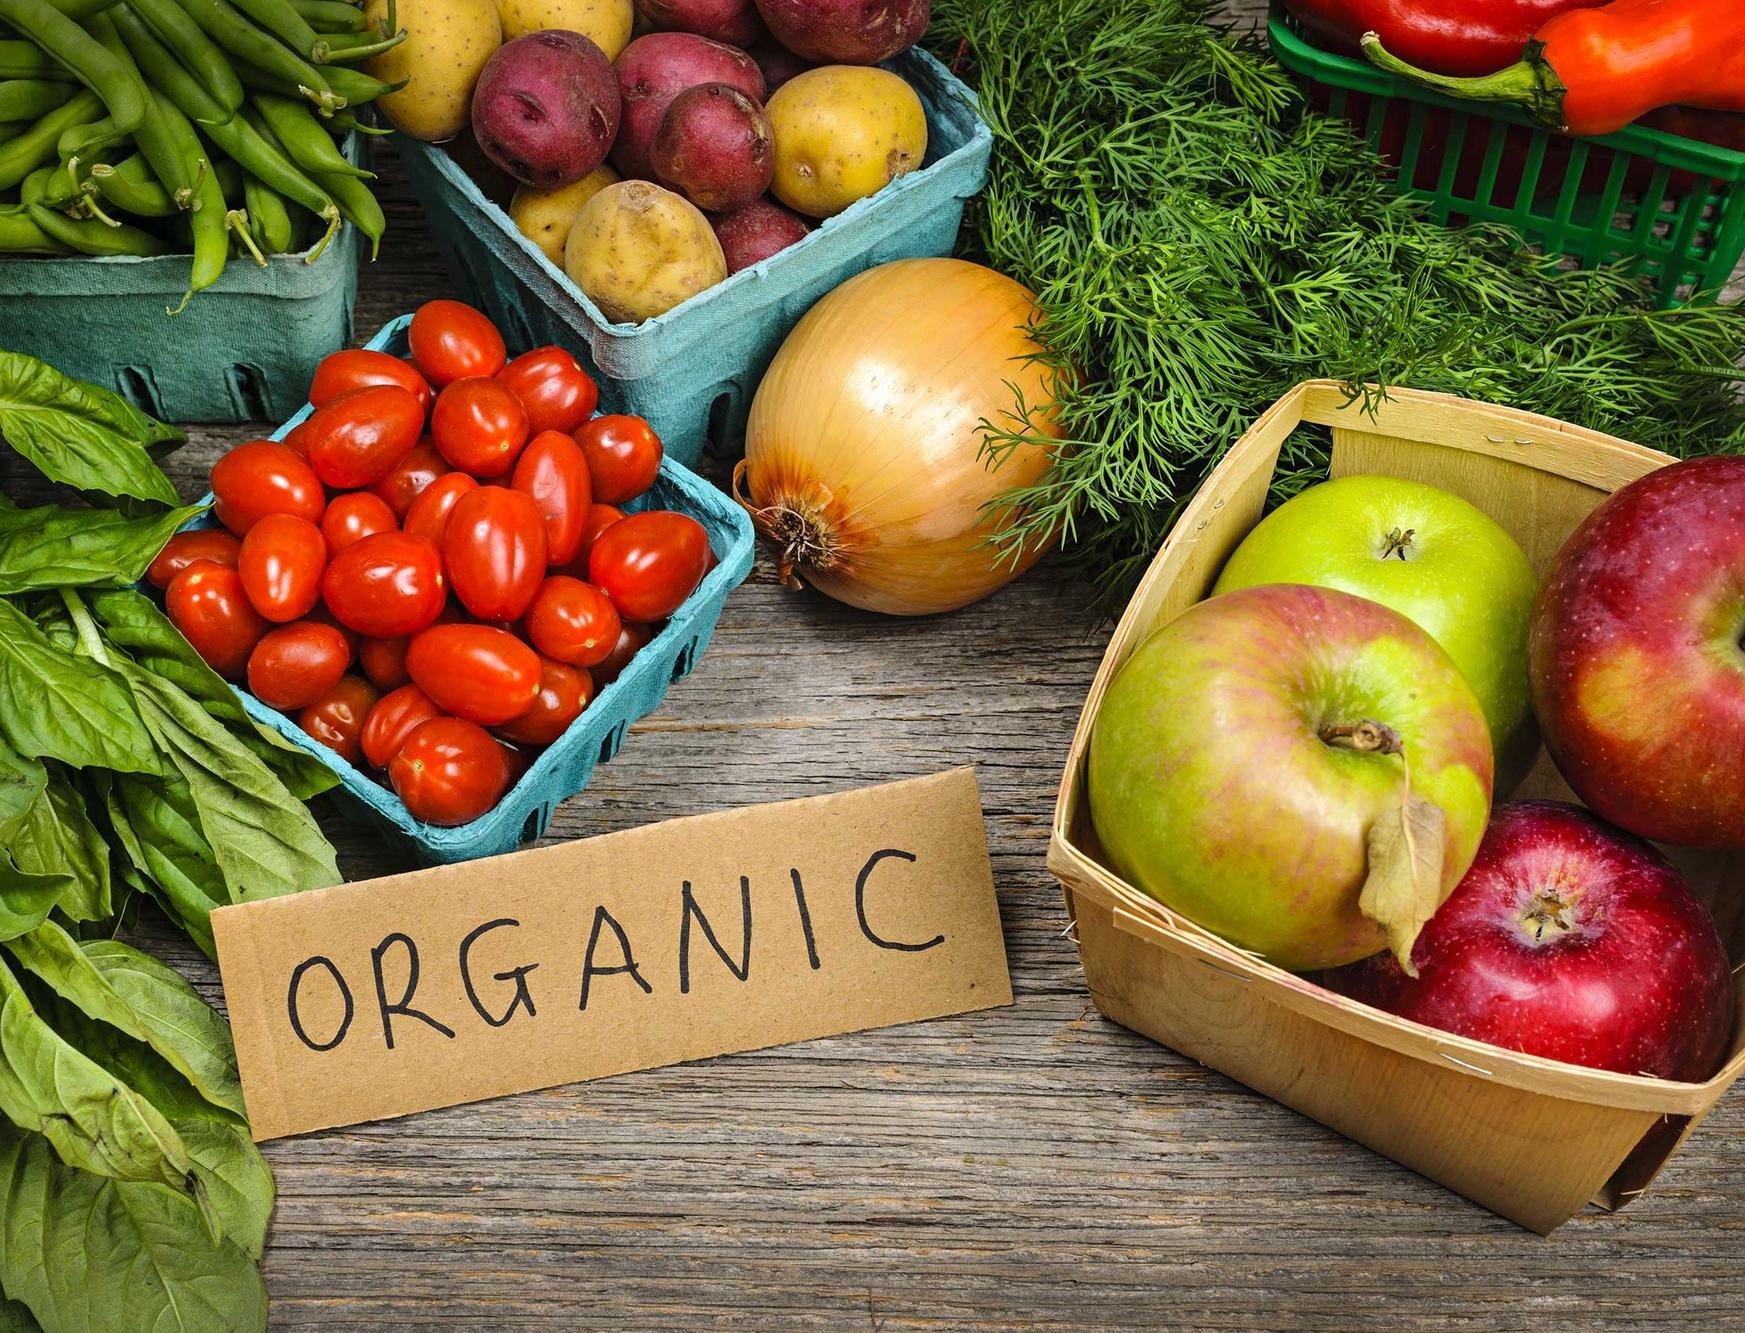 45% жителей России не будут переплачивать за органические продукты